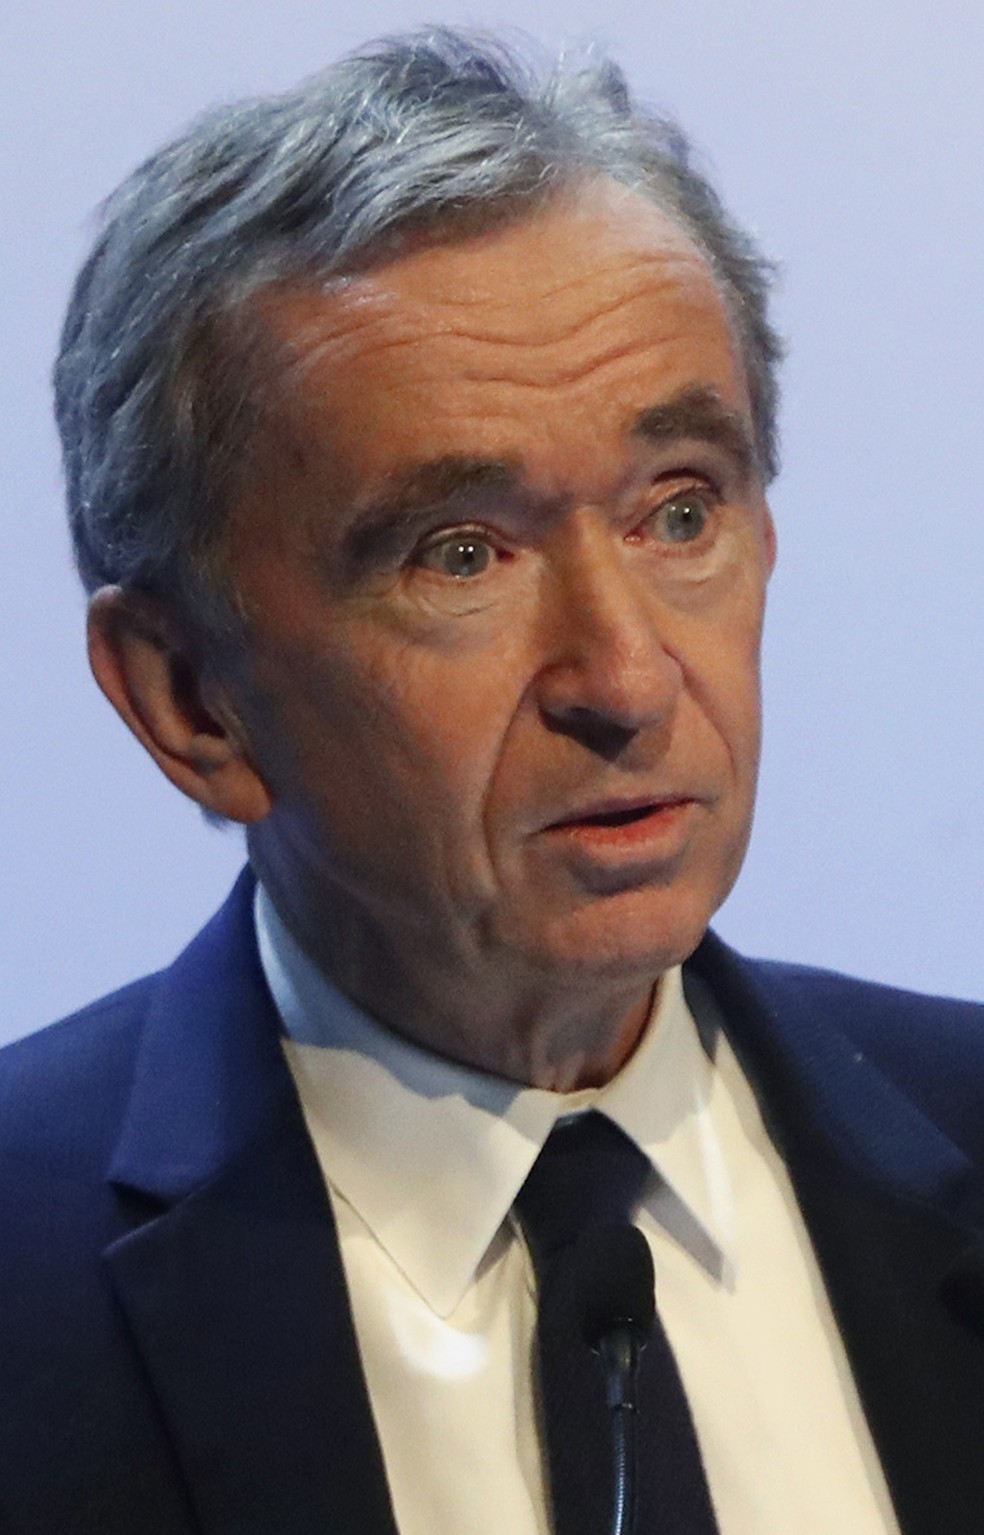 Arnault: “Simplesmente resolvemos redirecionar nossos investimentos” — Foto: Thibault Camus, File/AP